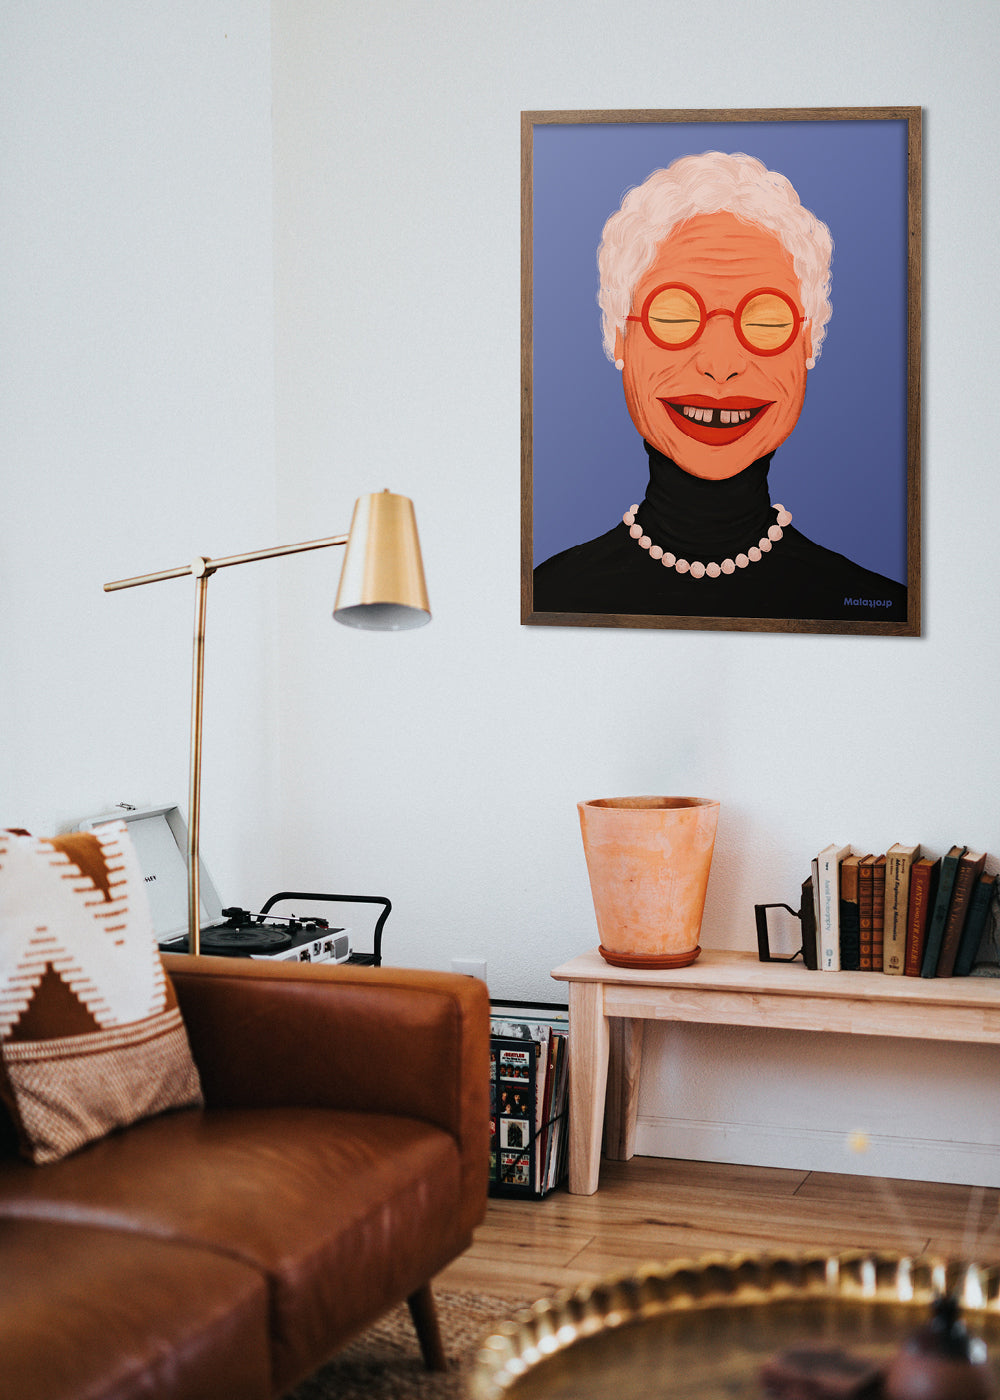 I kollektionen “Sketchy” møder vi farverige mennesker i deres bedste alder. Plakaterne har et analogt udtryk, og kan give ethvert rum et farverigt og uformelt løft. Vi håber at en plakat fra denne serie kan glæde en væg i dit hjem.  Alle vores plakater printes på 240 g. mat kvalitetspapir og findes i 7 standardstørrelser.